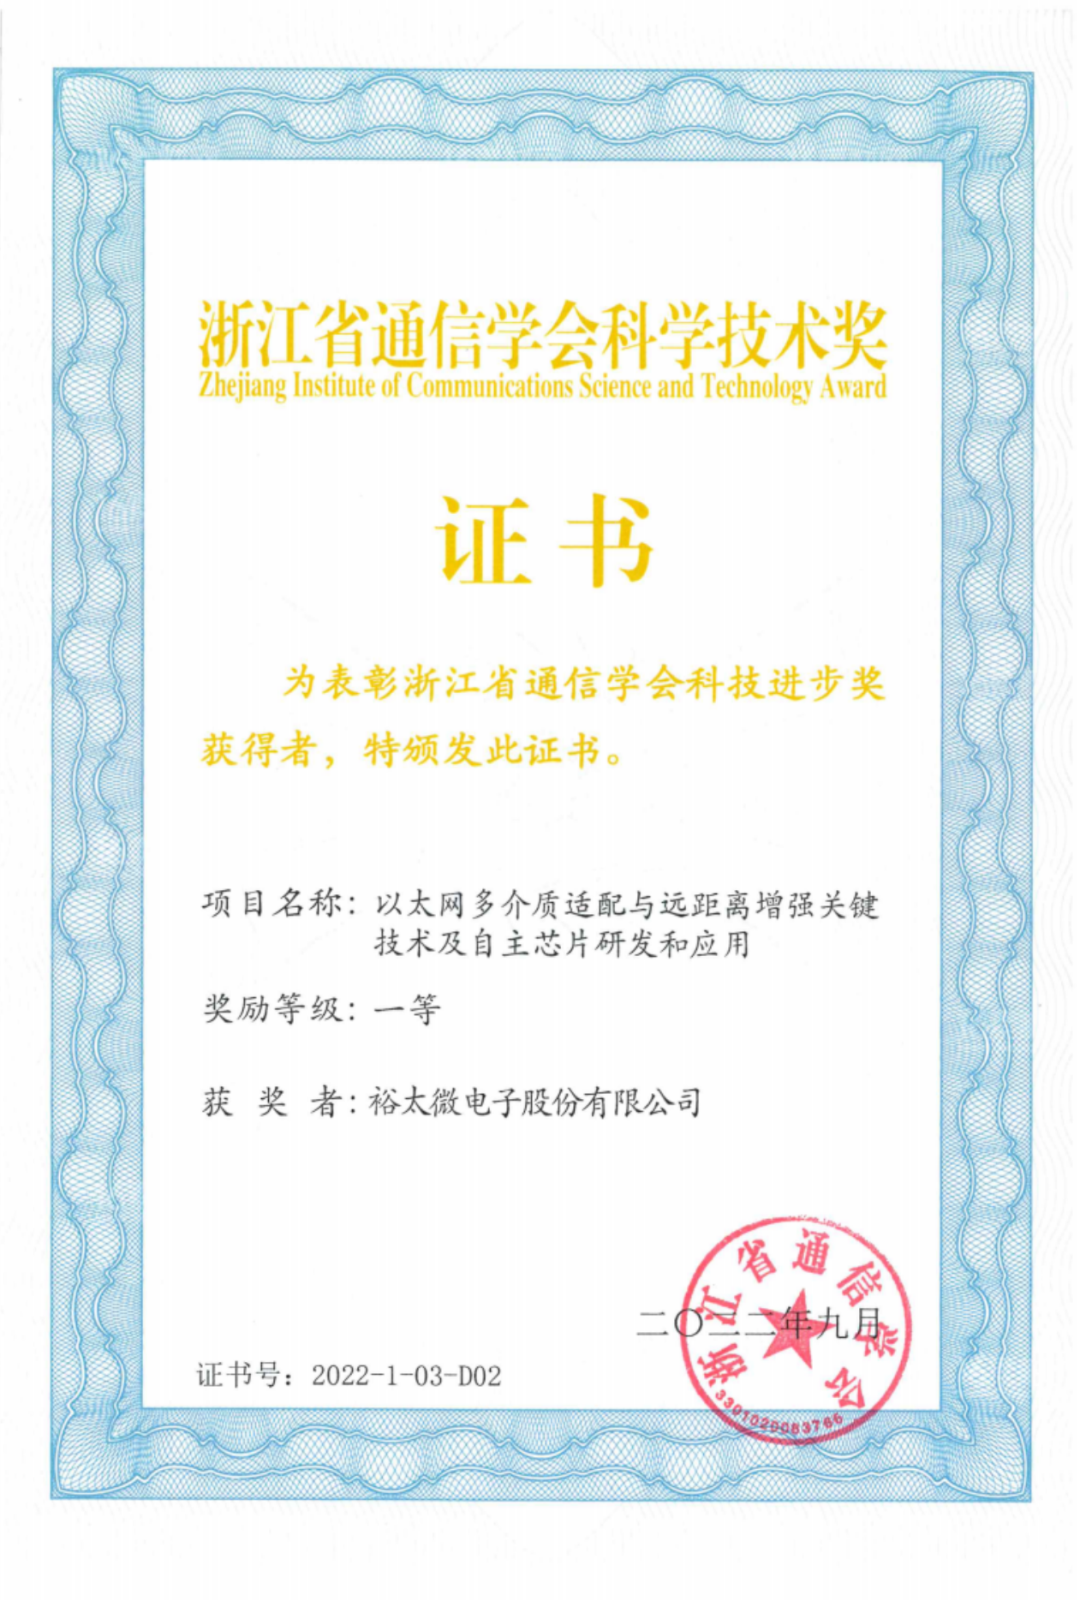 裕太微电子联合申报项目荣获浙江省通信学会科学技术奖一等奖